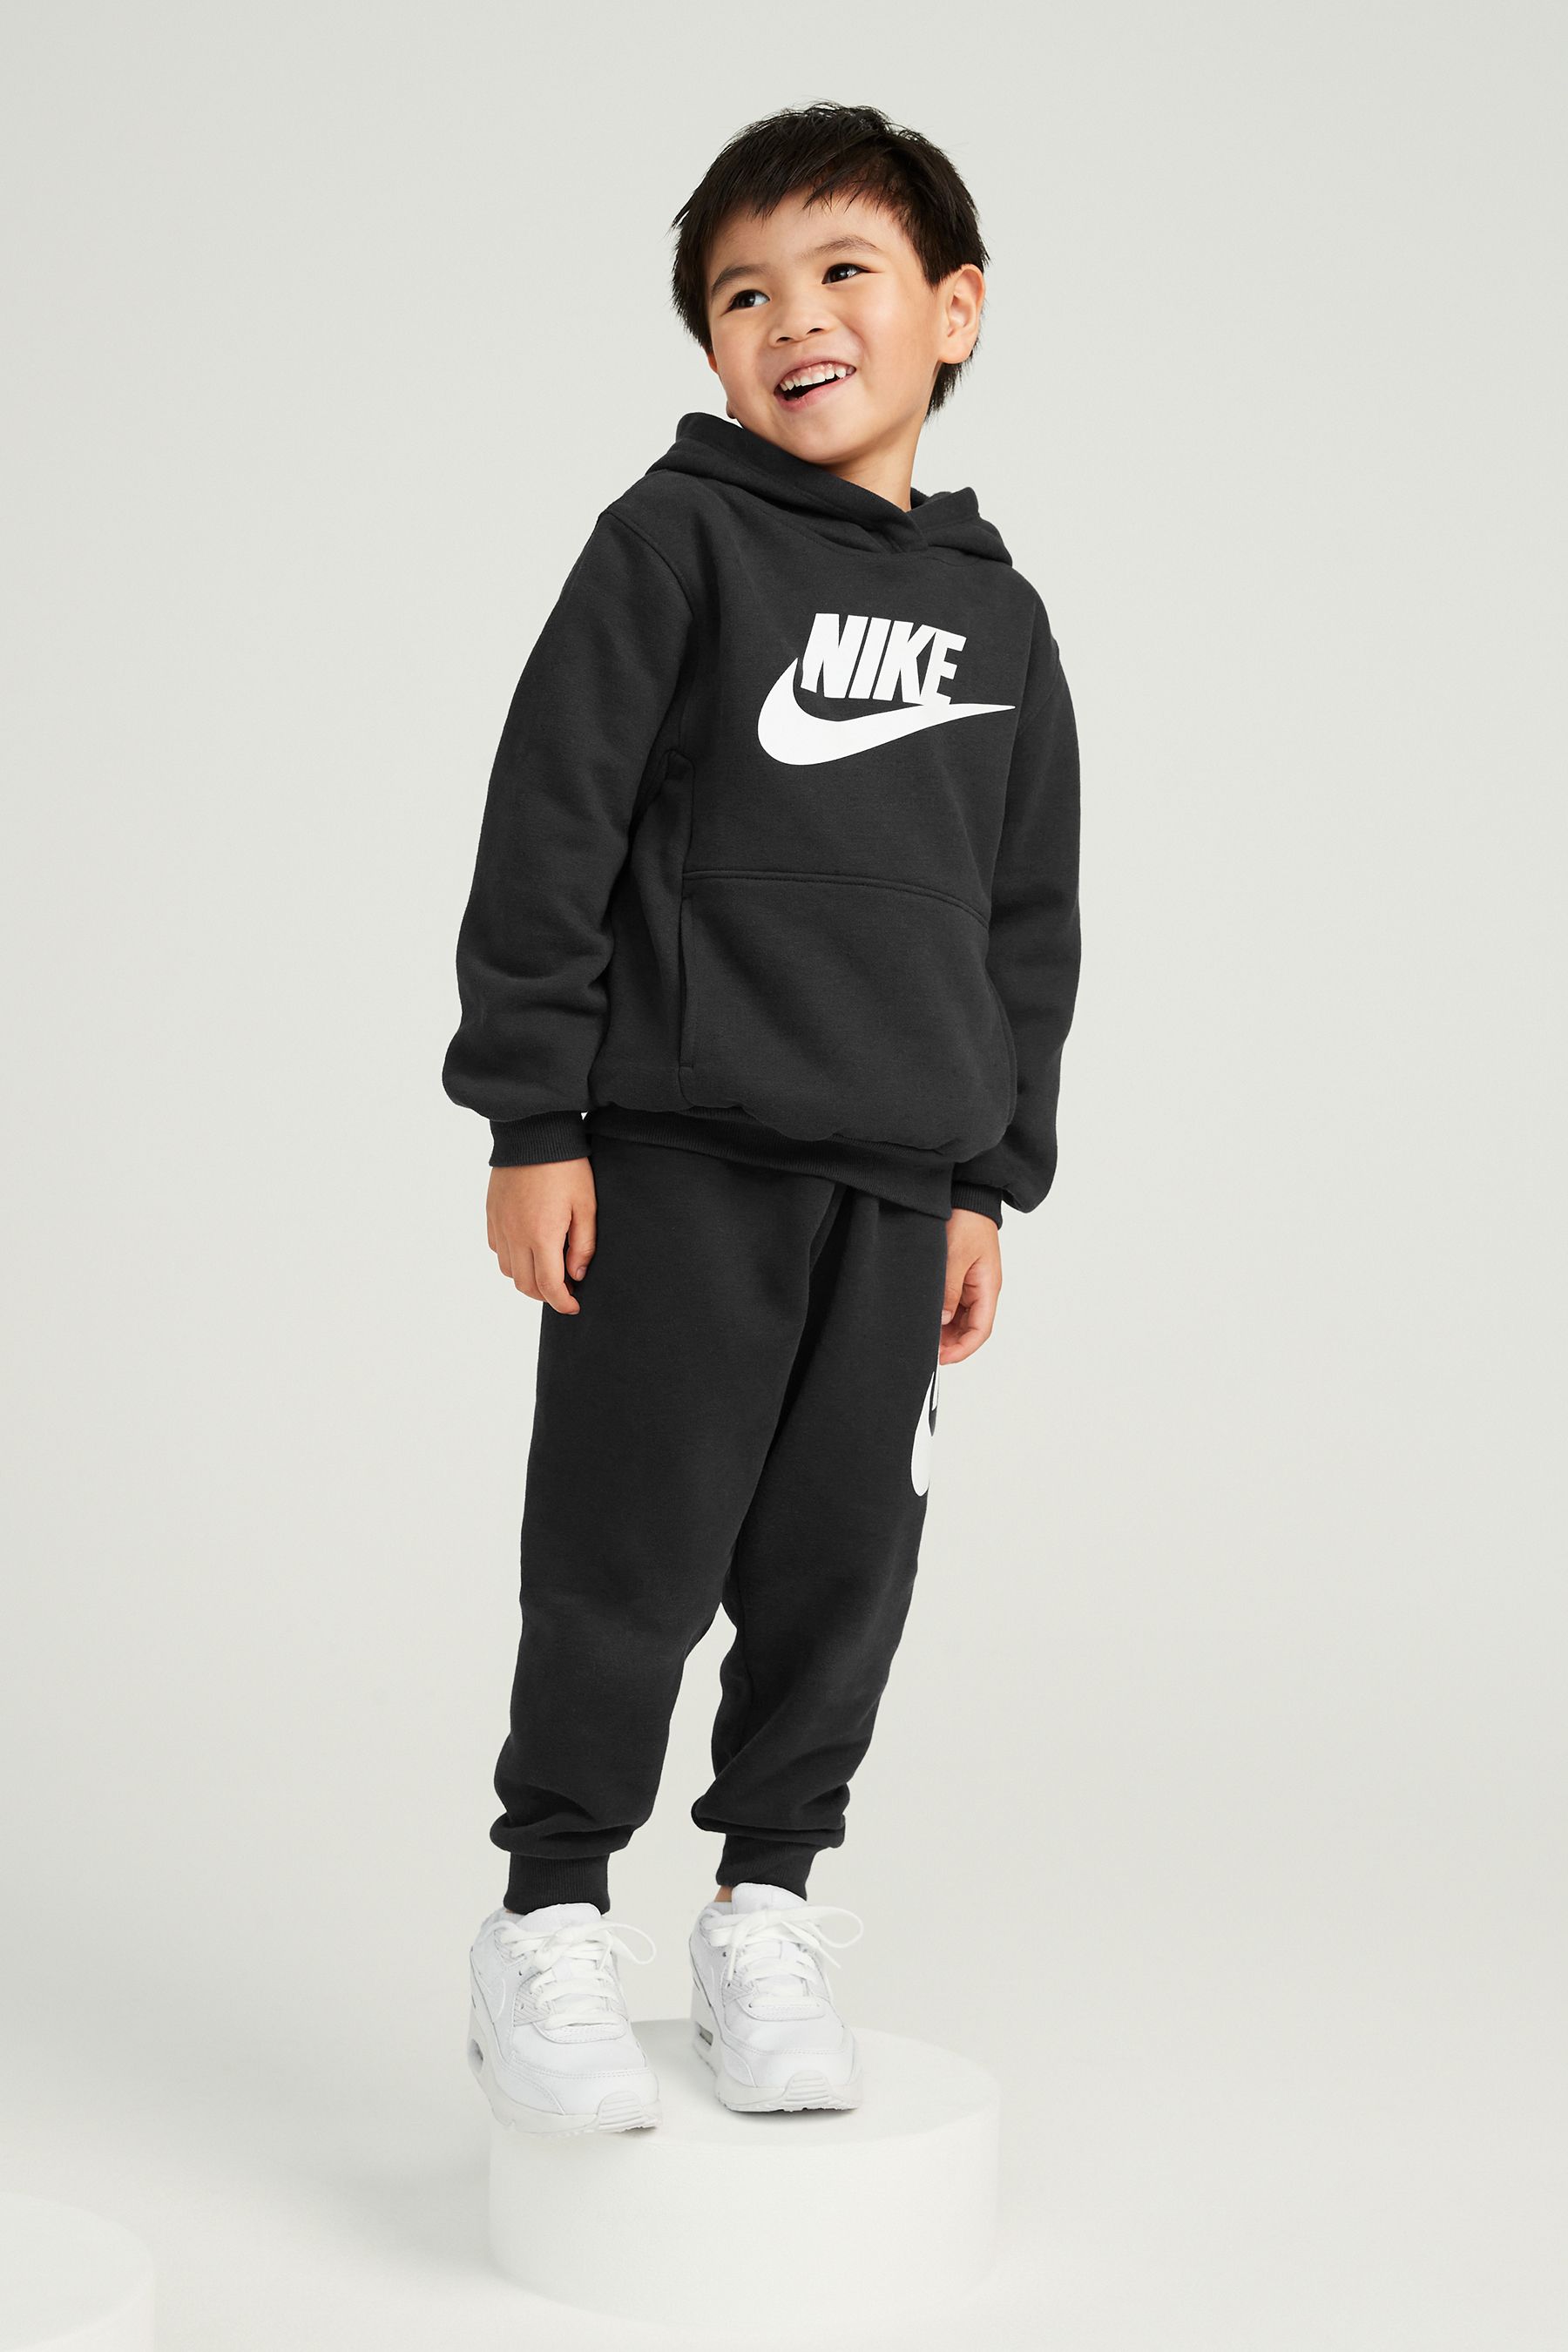 Флисовый спортивный костюм Club для малышей Nike, черный цена и фото